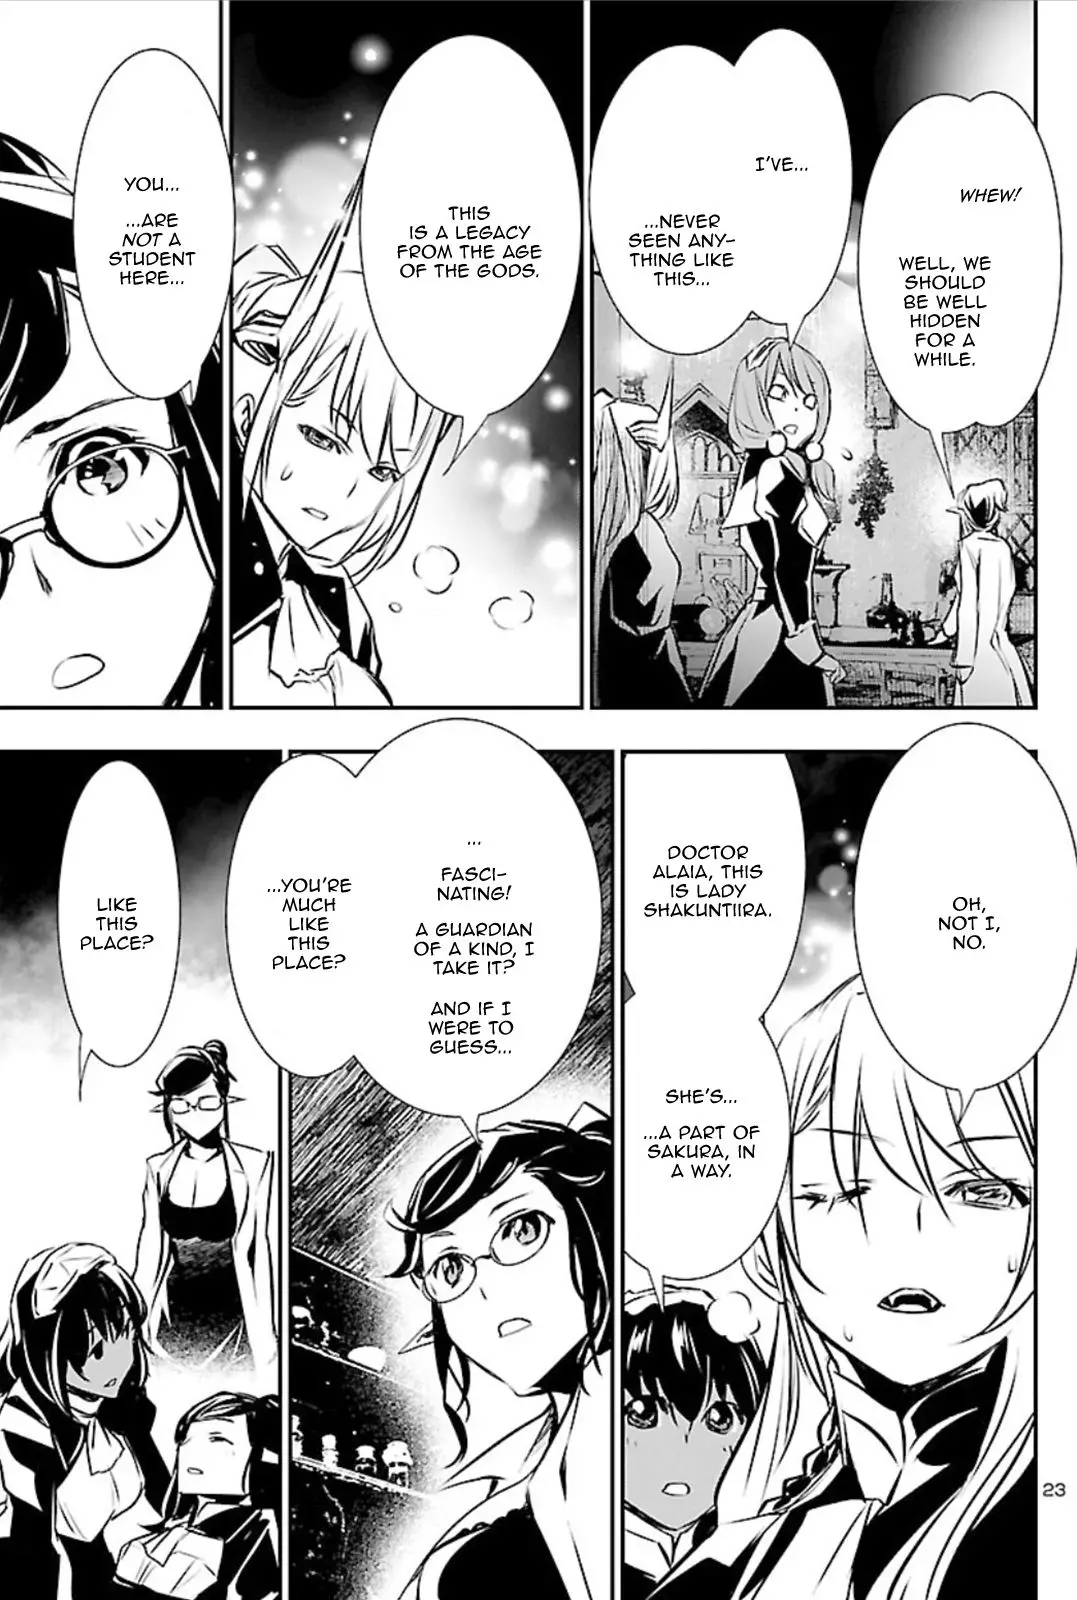 Shinju no Nectar - 41 page 22